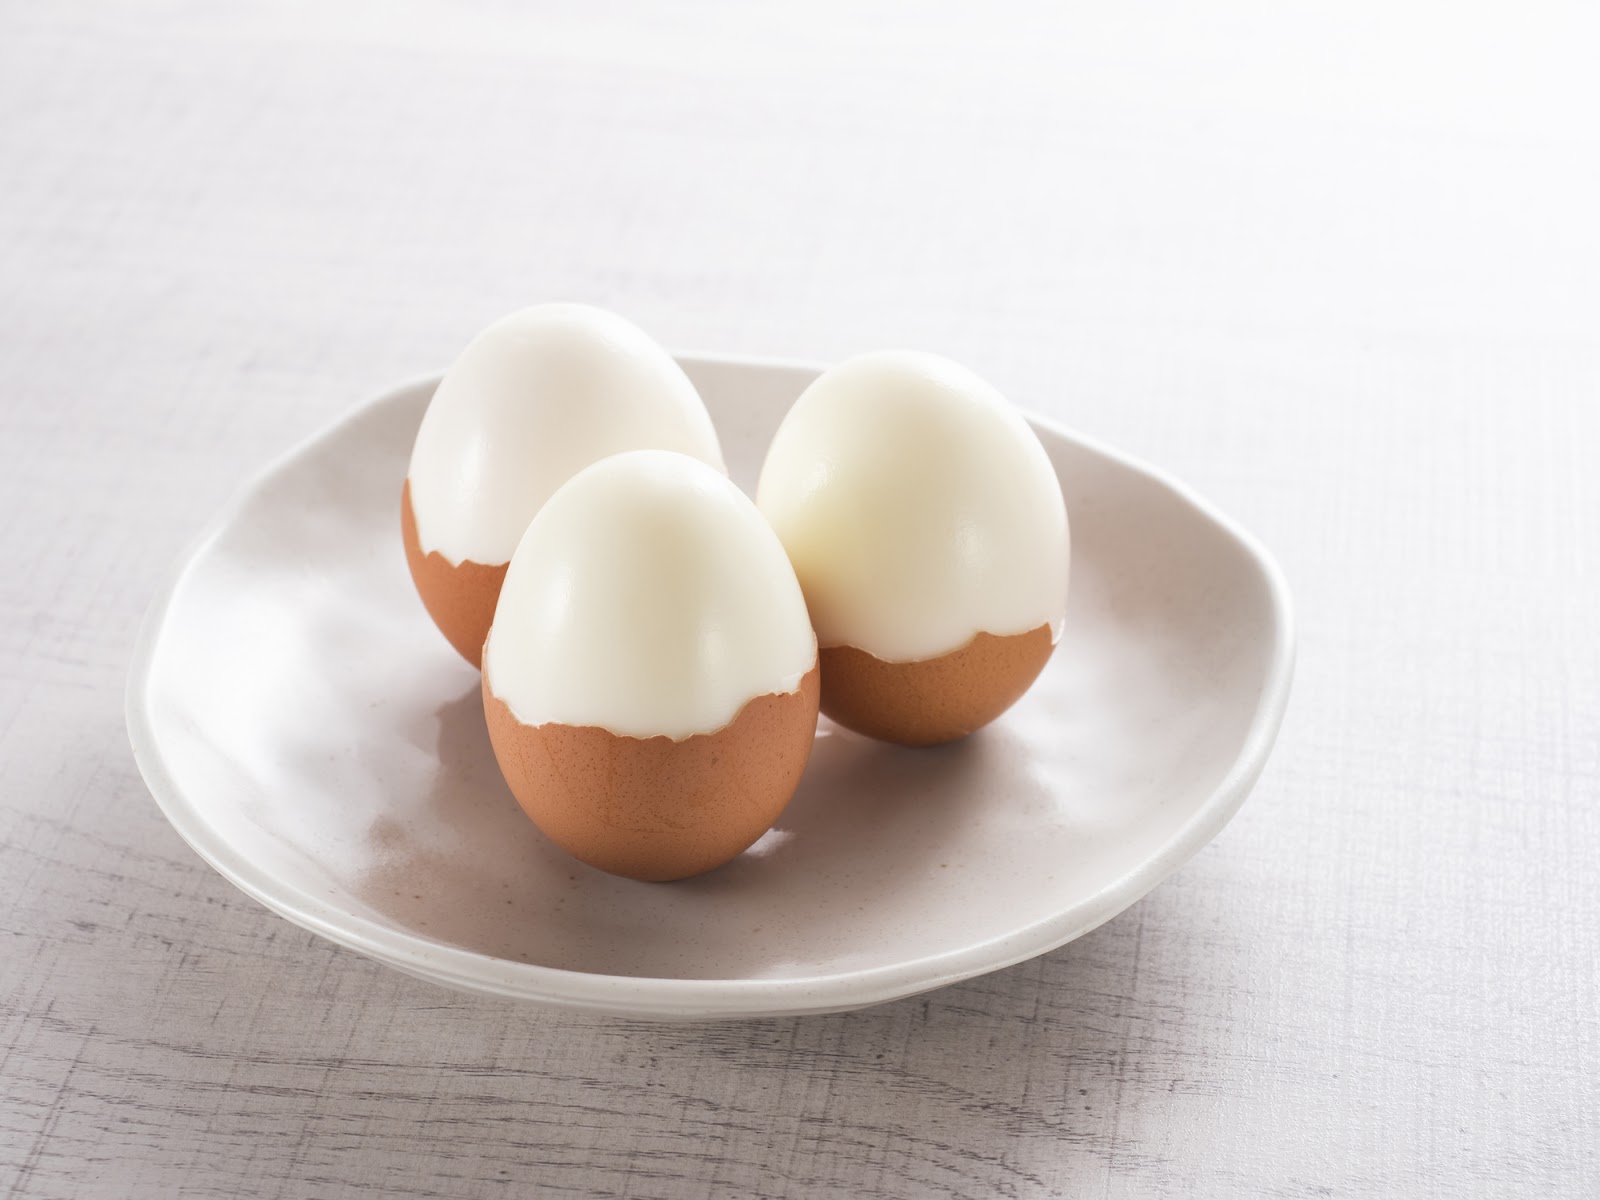 ゆで卵がむきにくい原因とすぐに実践できる綺麗にむくコツをご紹介！-卵の豆知識|大熊養鶏場